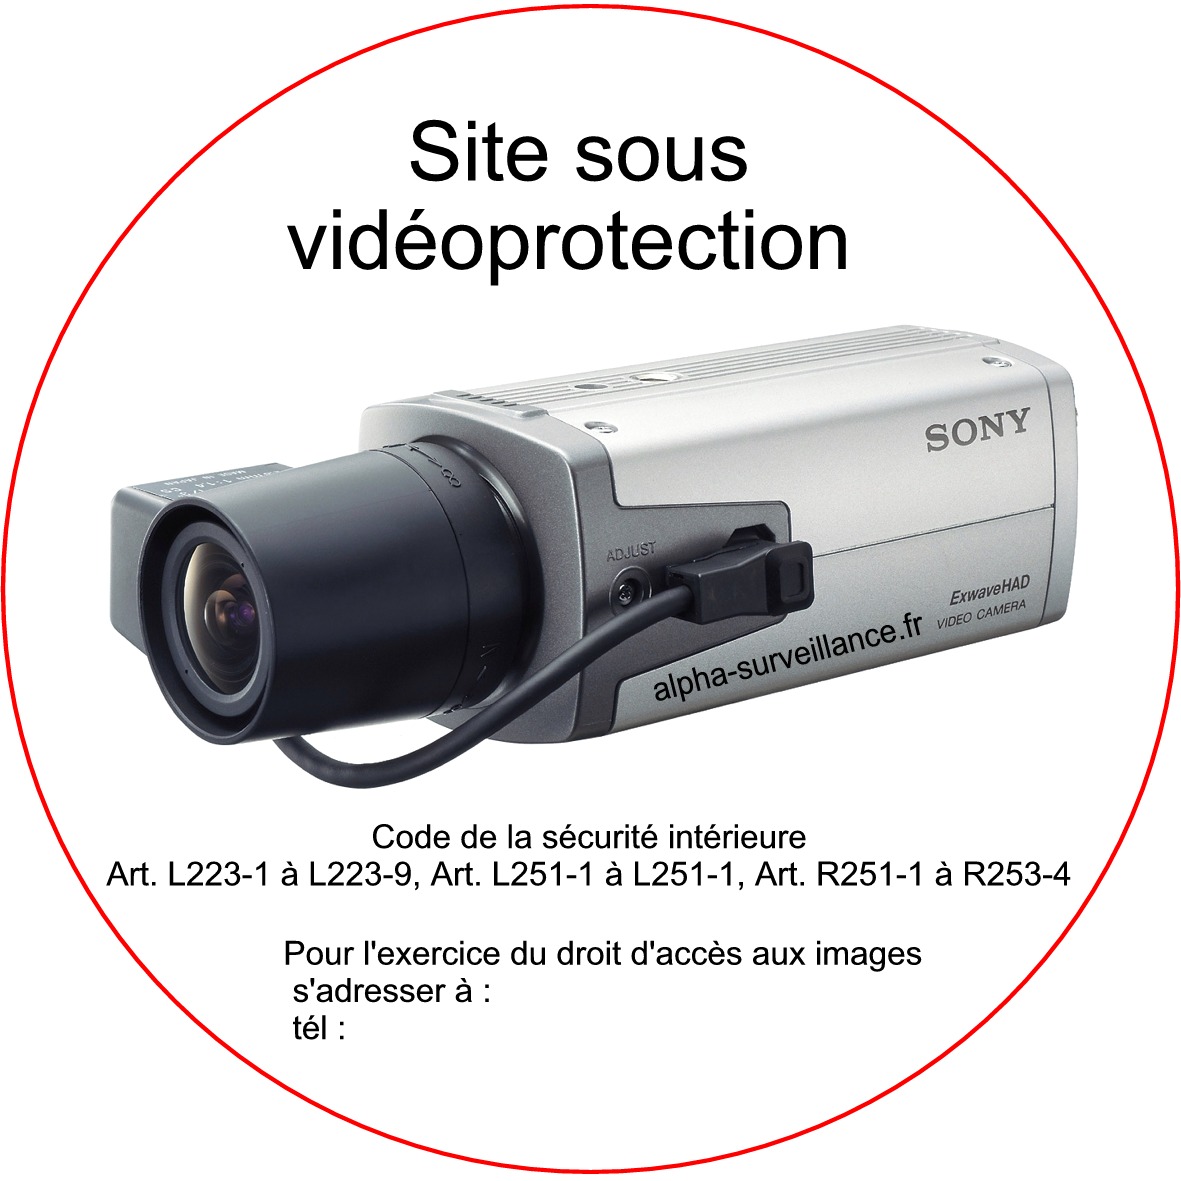 Signalisation "Site sous vidéoprotection". Lot 5 stickers